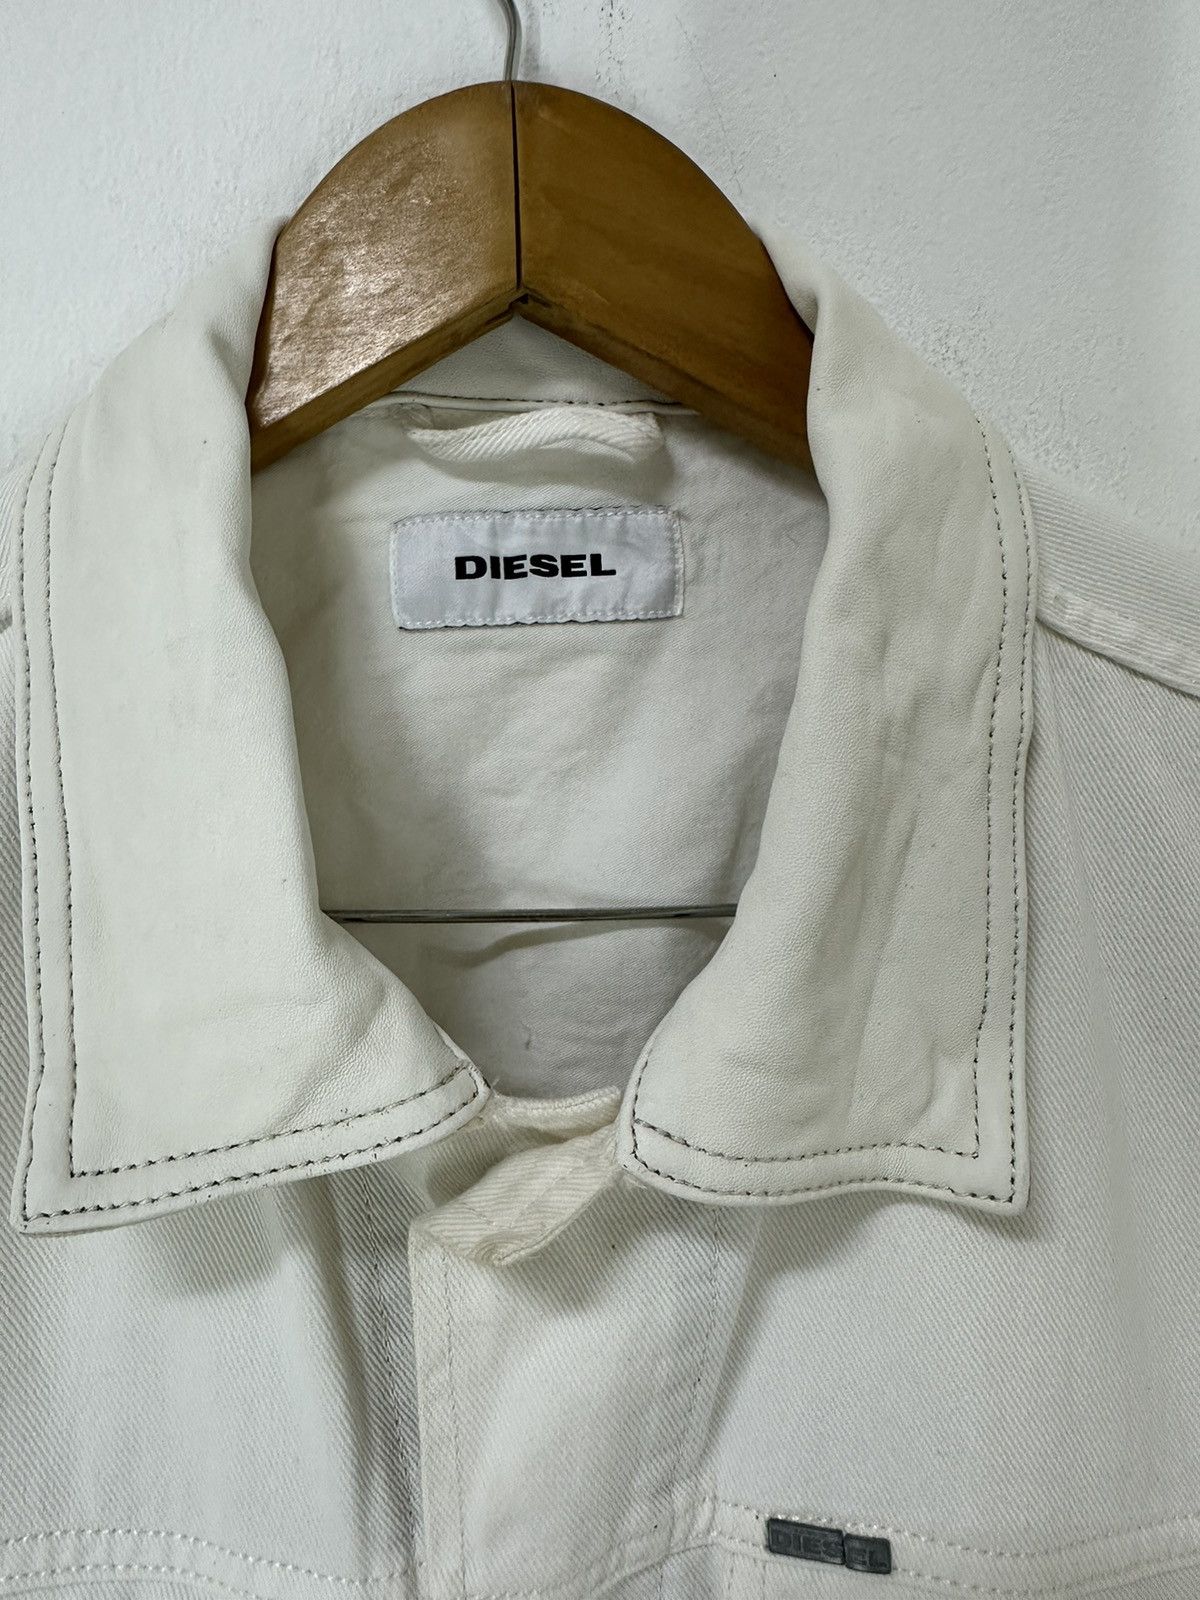 Diesel White Denim Type 3 Design Leather Collar - 3